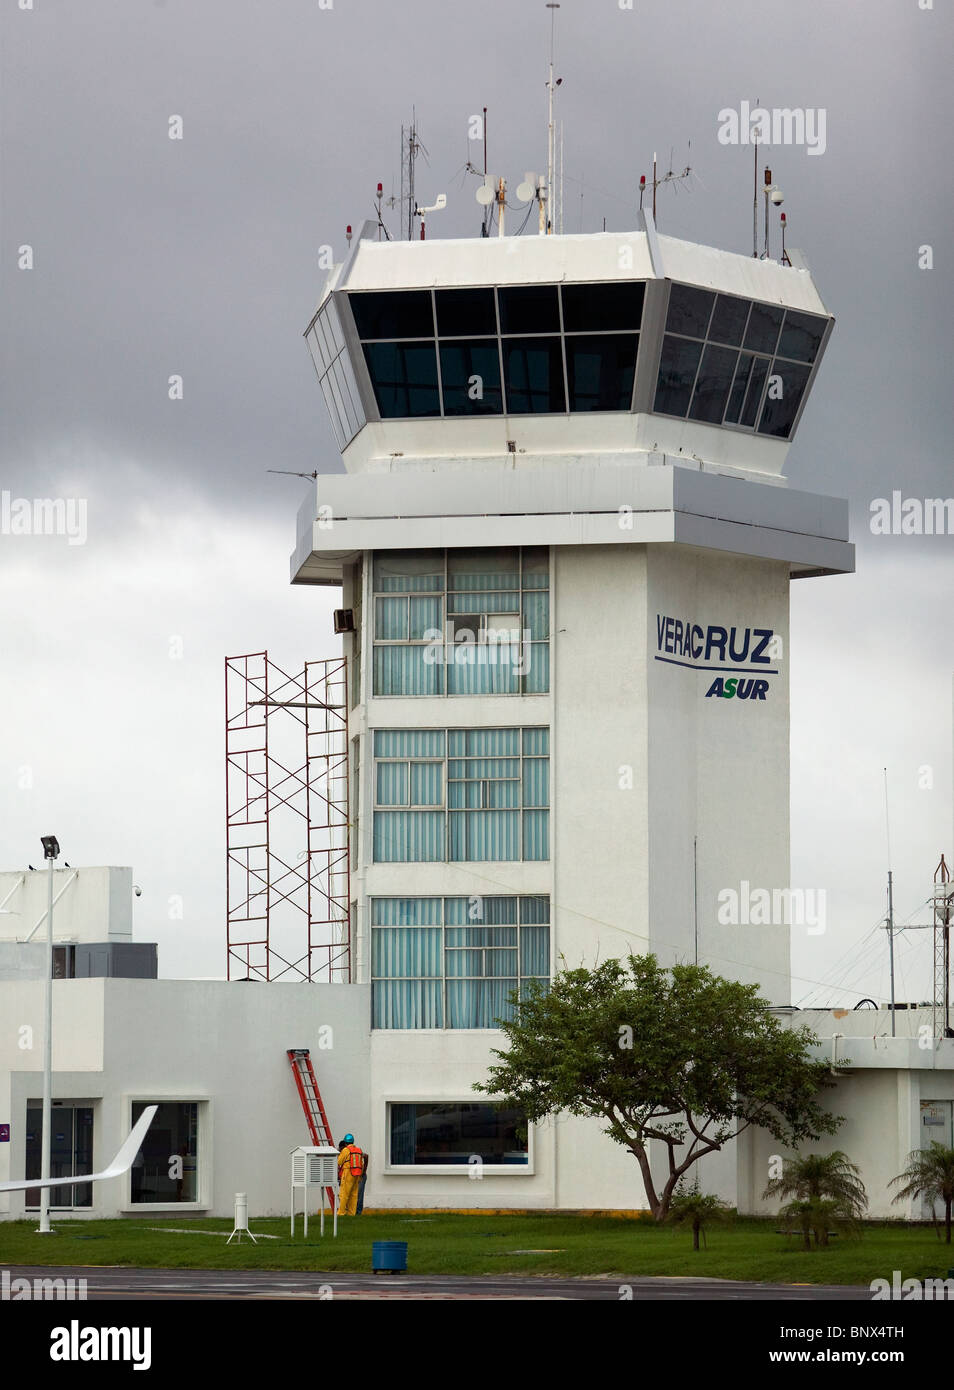 Vista aérea de la torre de control del aeropuerto de arriba Veracruz México Foto de stock